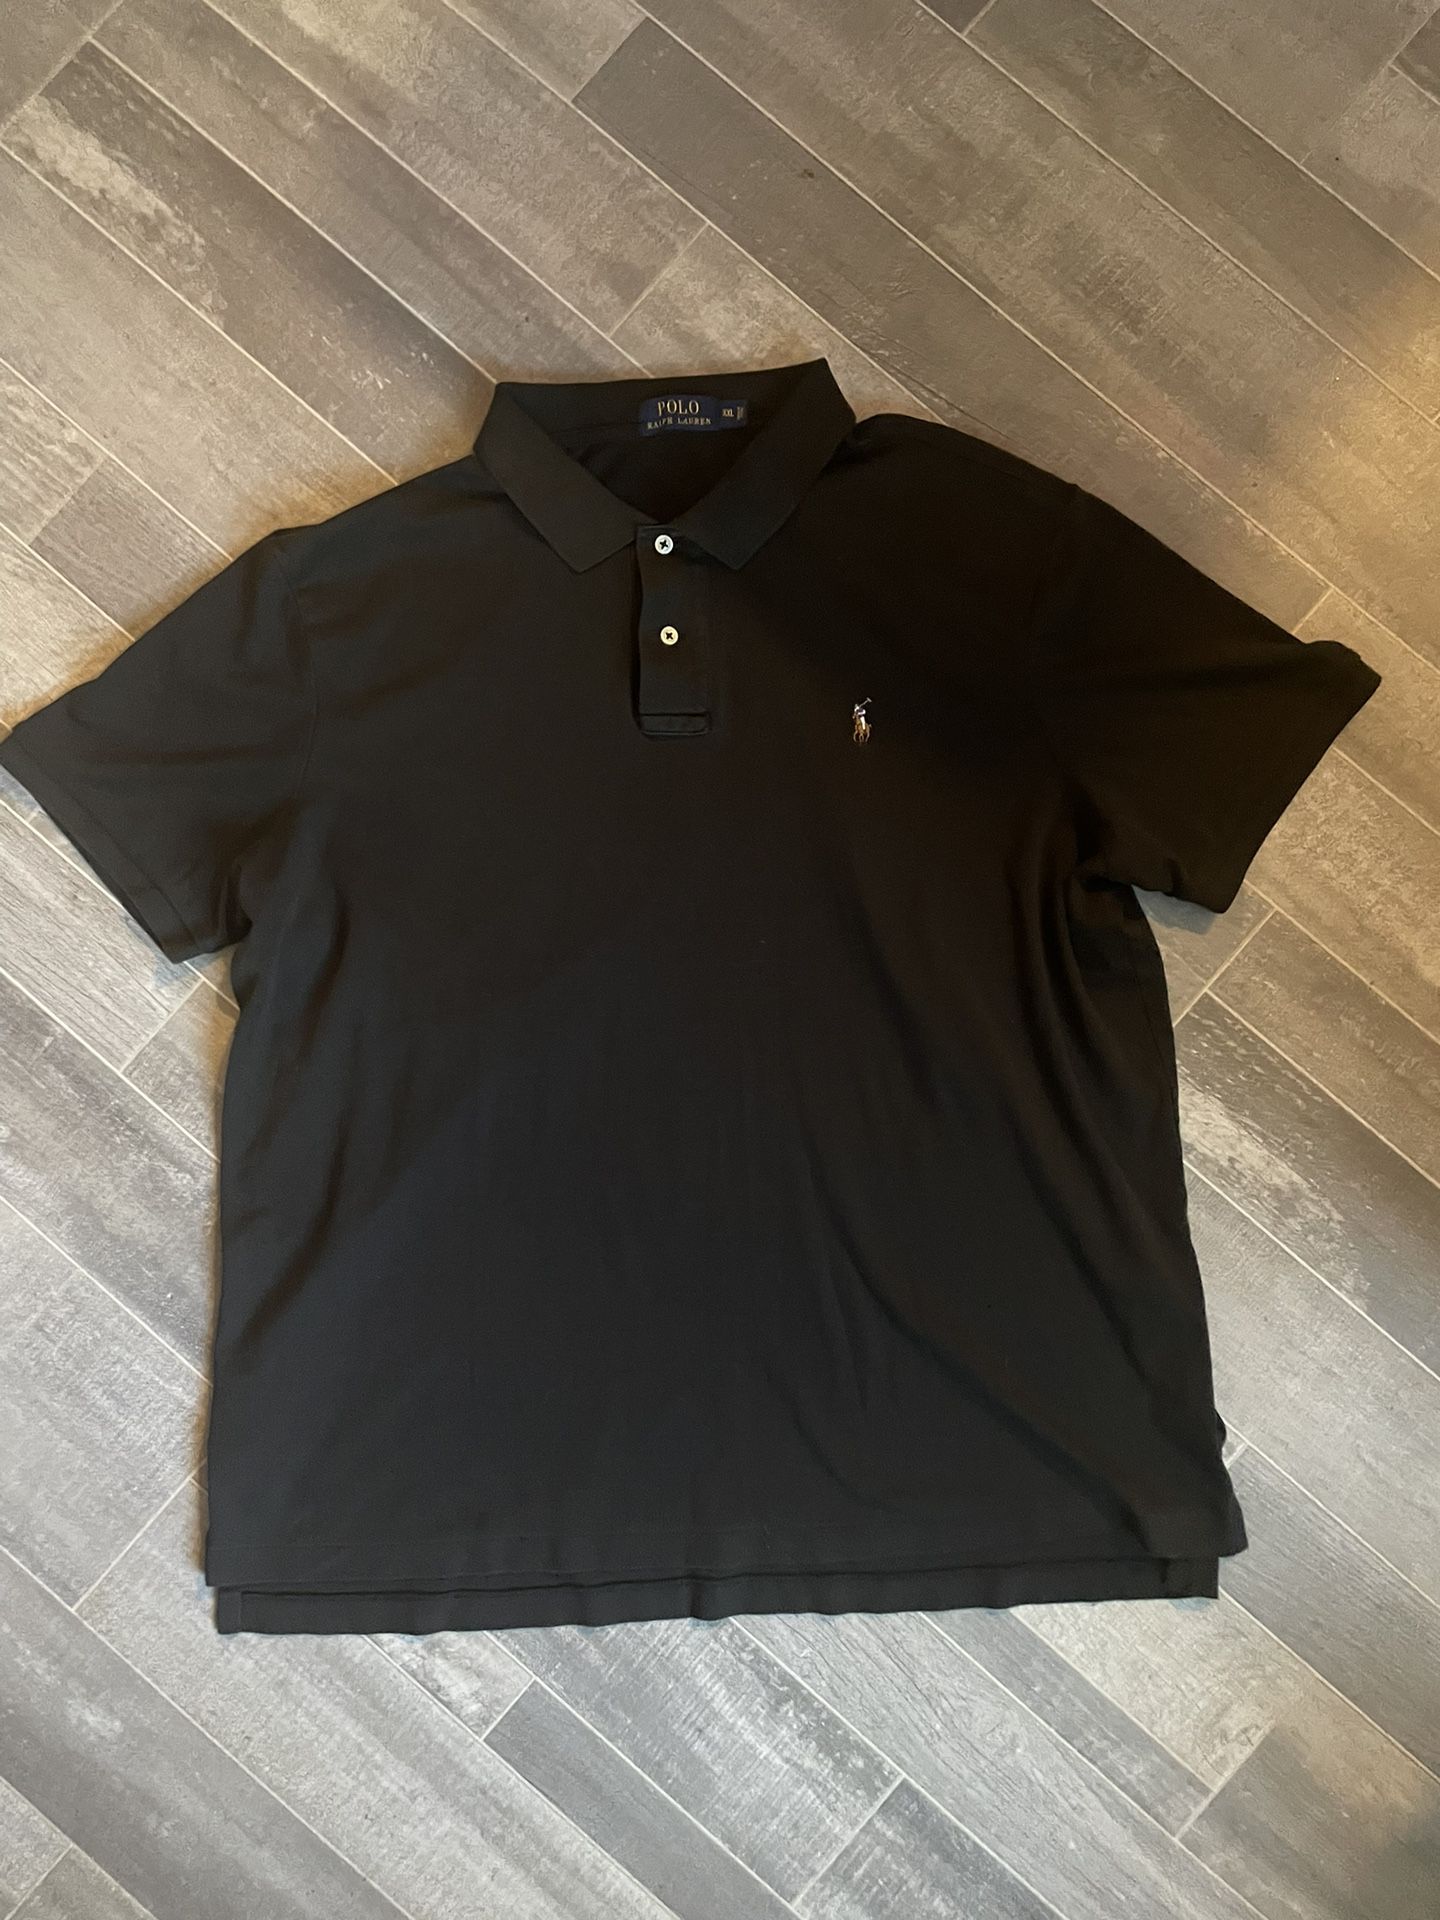 Polo Ralph Lauren Men's Size 2XL Pima Soft Touch Cotton Polo Shirt Black